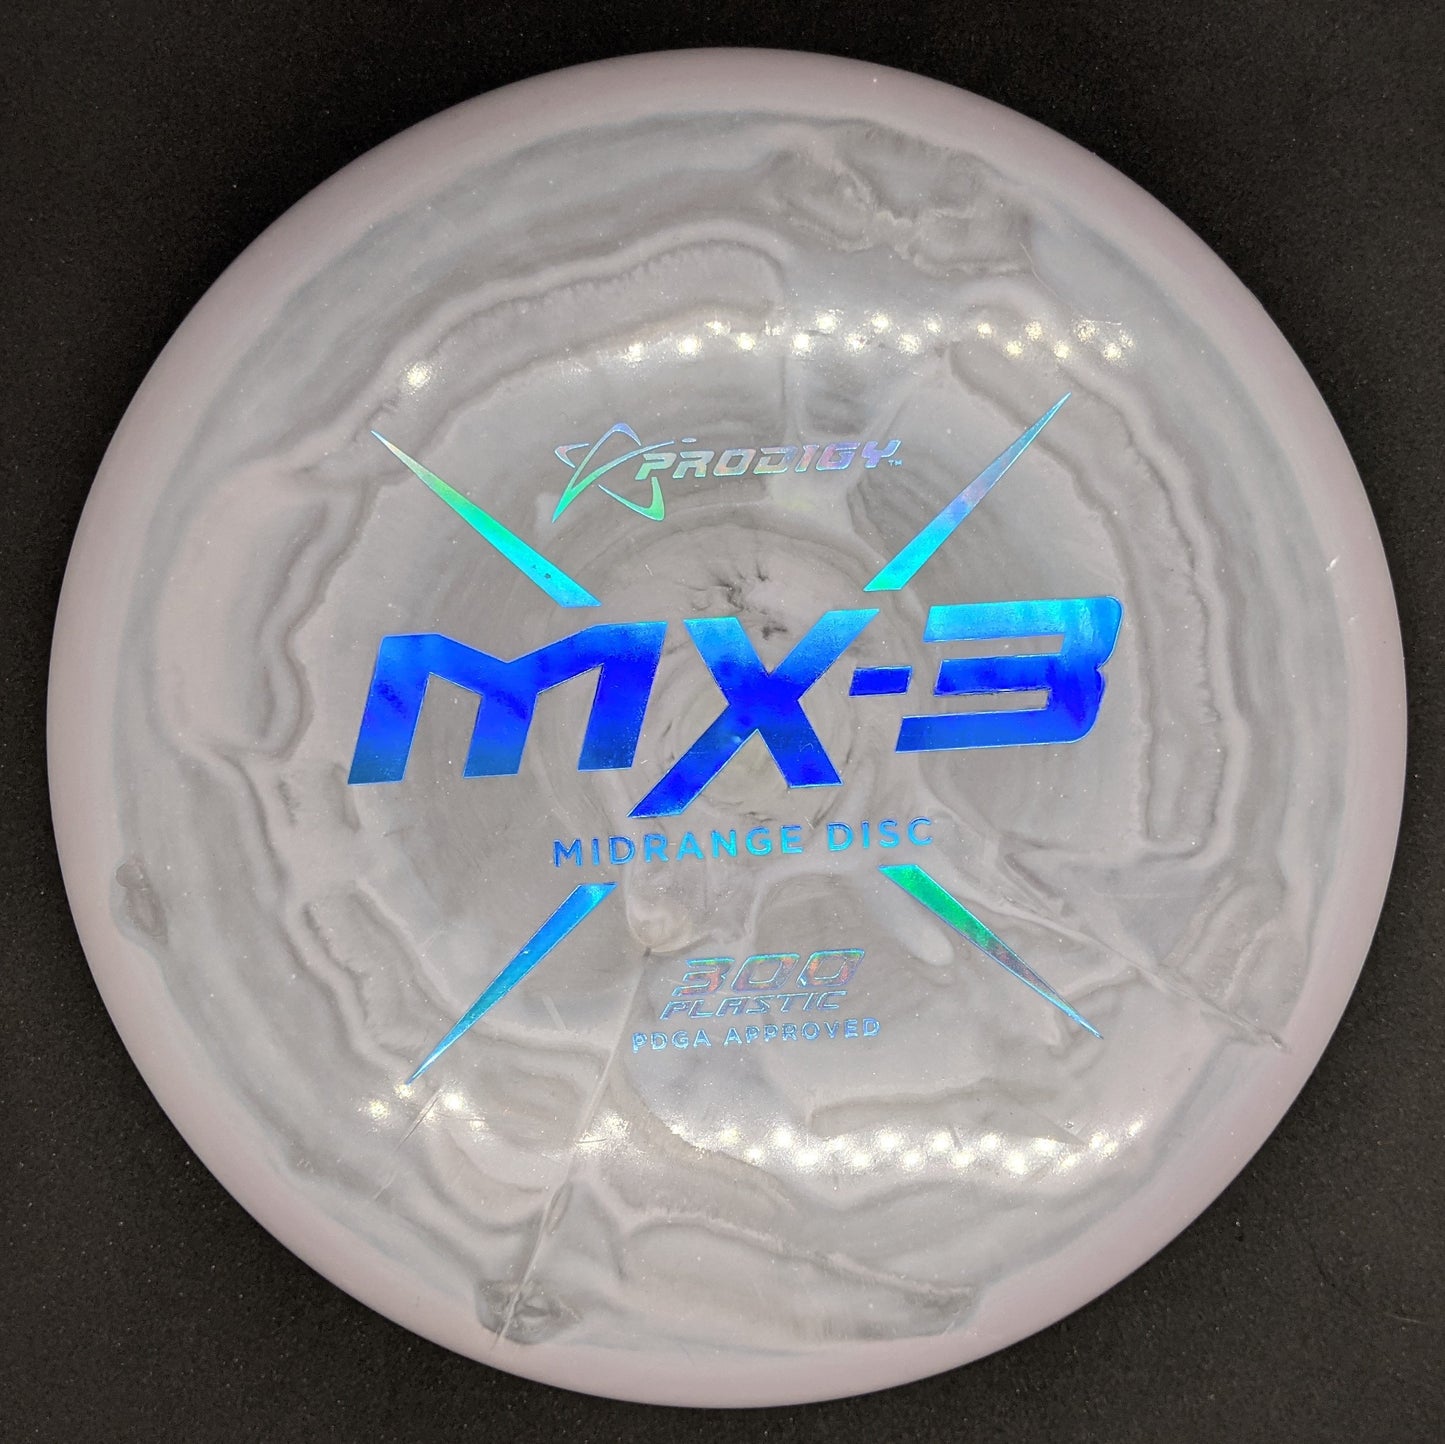 Prodigy - MX3 - 300 Spectrum